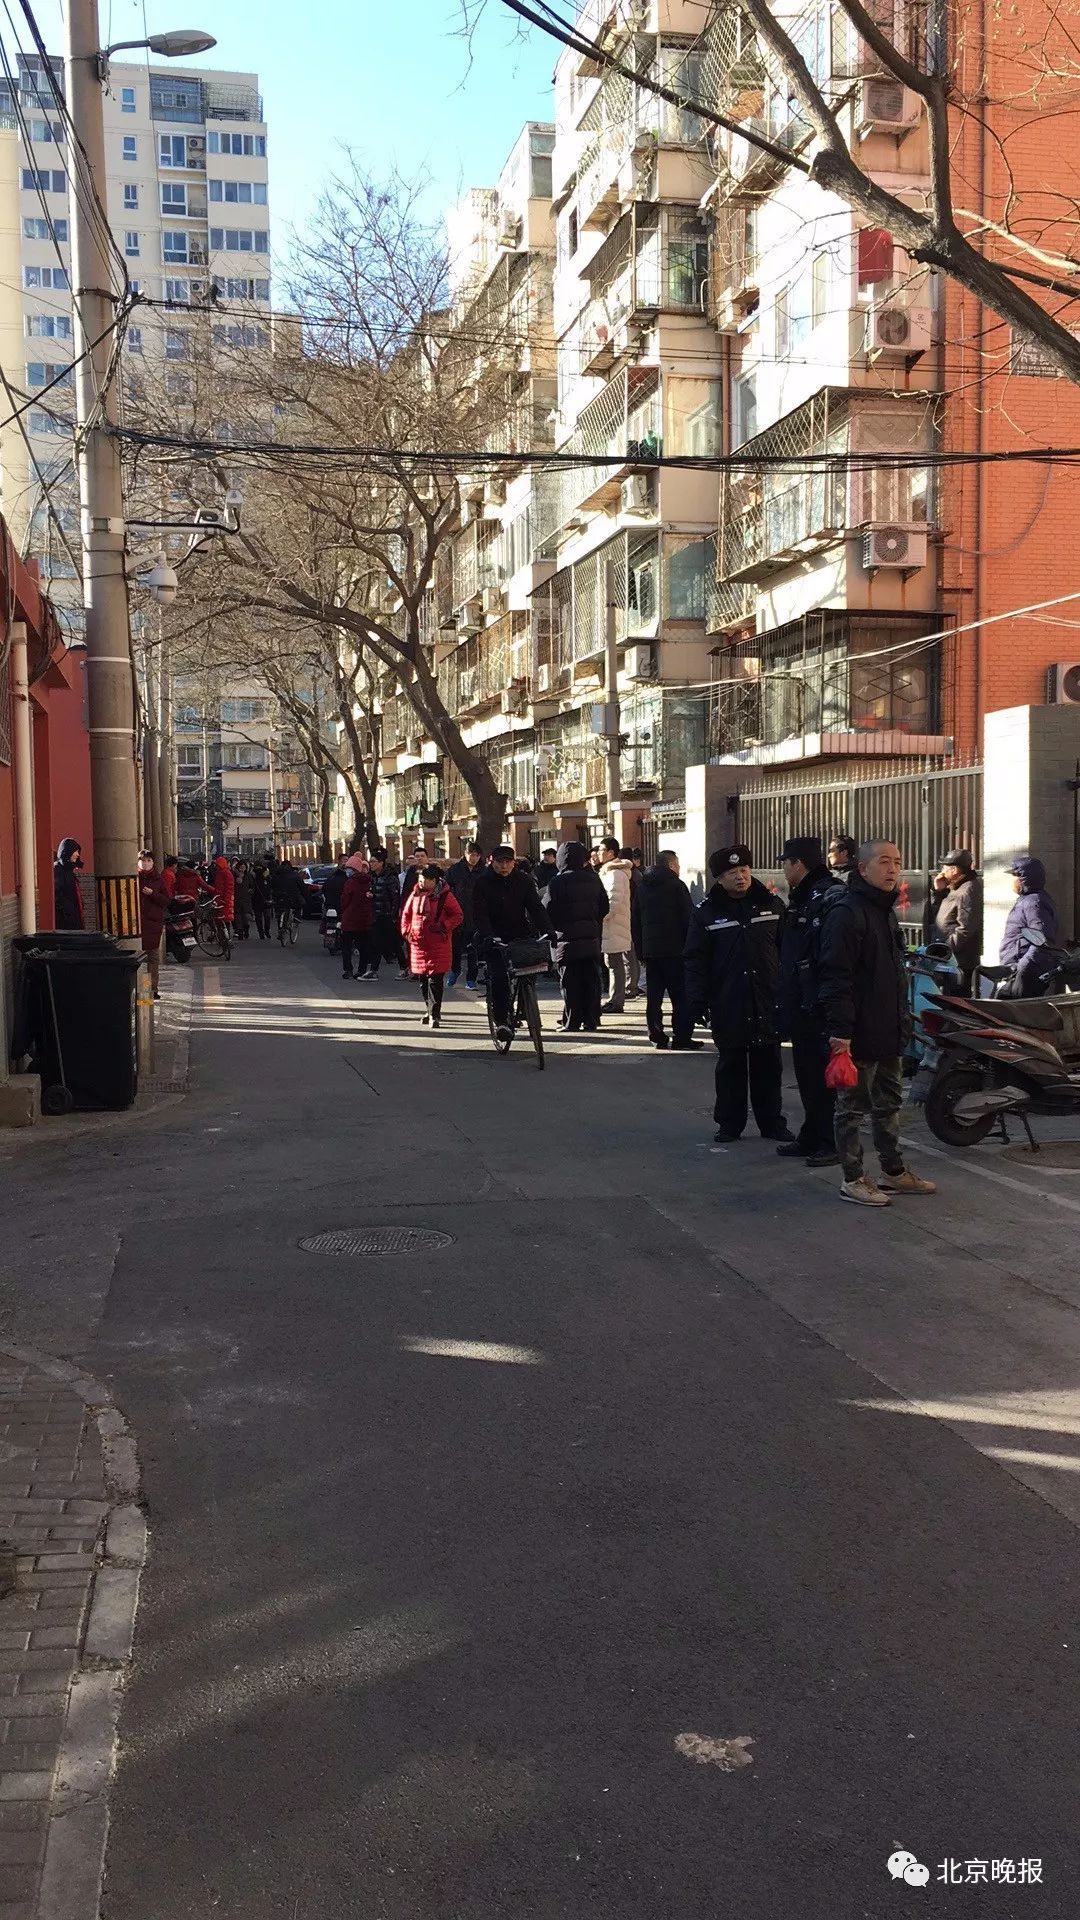 官方通报:北京西城一小学发生伤人事件 ,20个孩